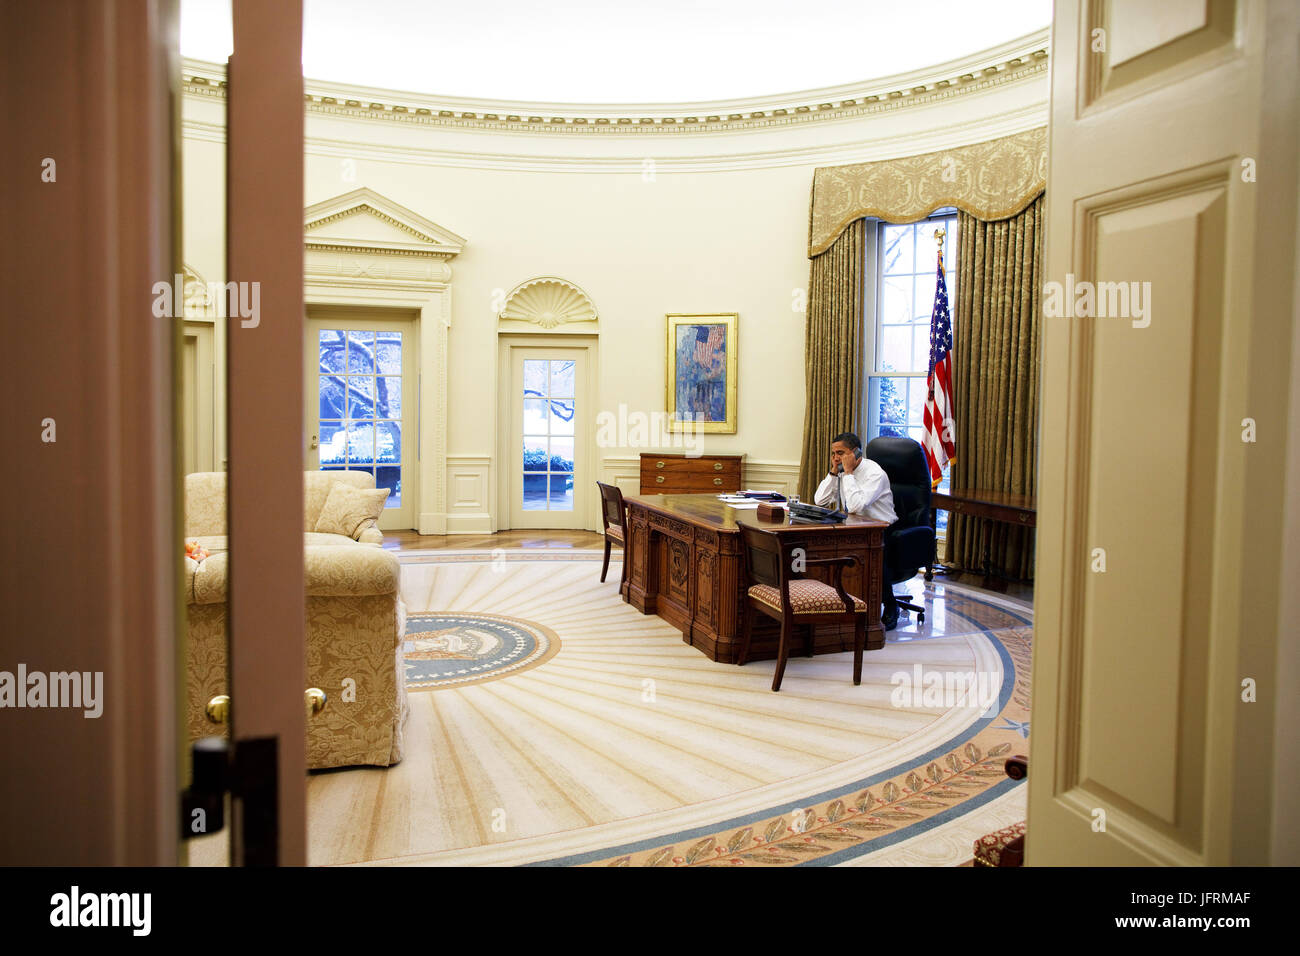 Le président Barack Obama dans le bureau ovale 1/28/09. Photo Officiel de la Maison Blanche par Pete Souza Banque D'Images